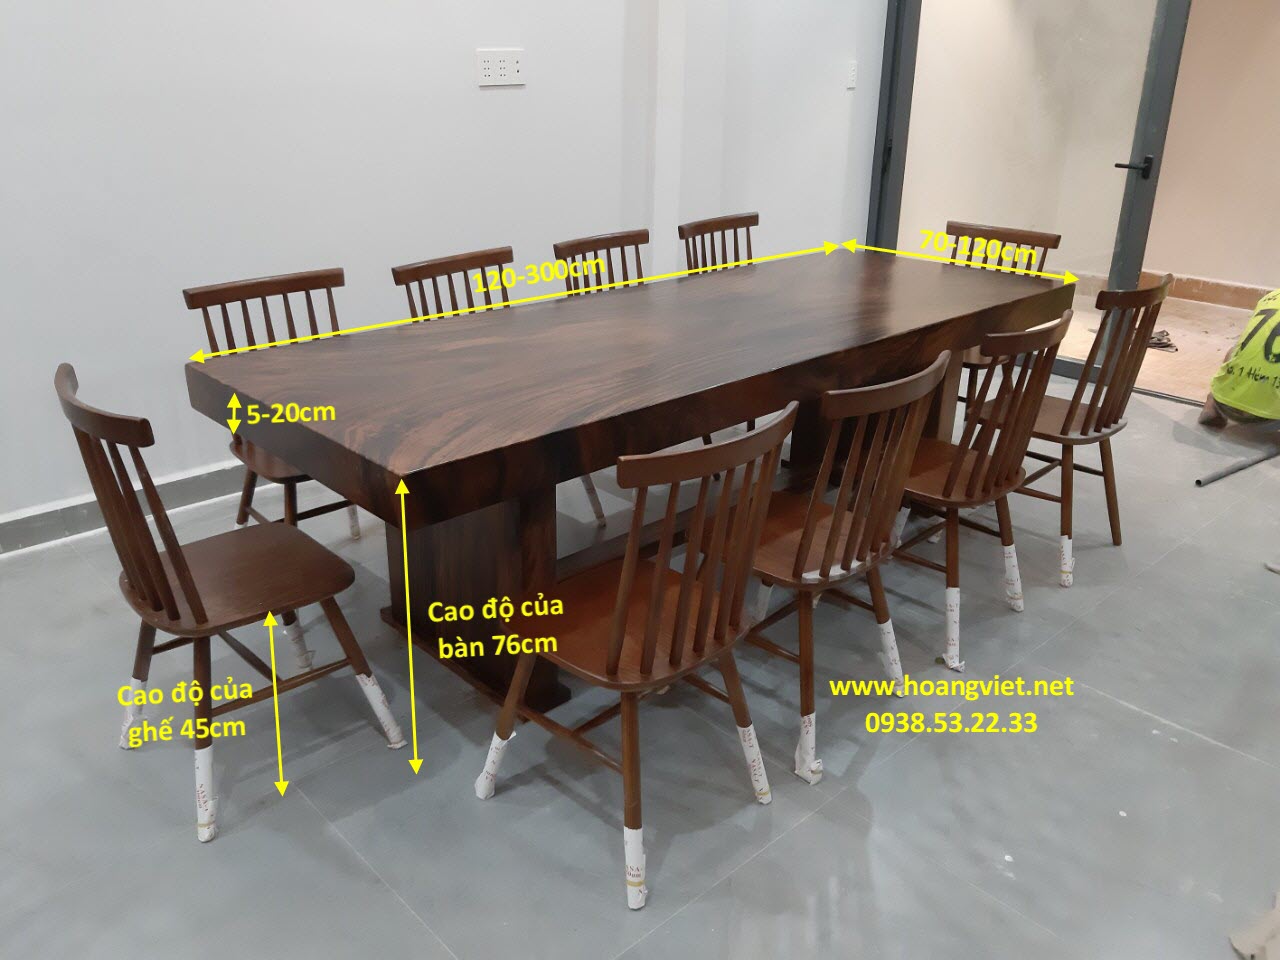 Kích thước bàn ghế gỗ nguyên khối - Bàn ghế gỗ nguyên khối với các kích thước đa dạng là lựa chọn lý tưởng cho mọi không gian phòng khách trong năm